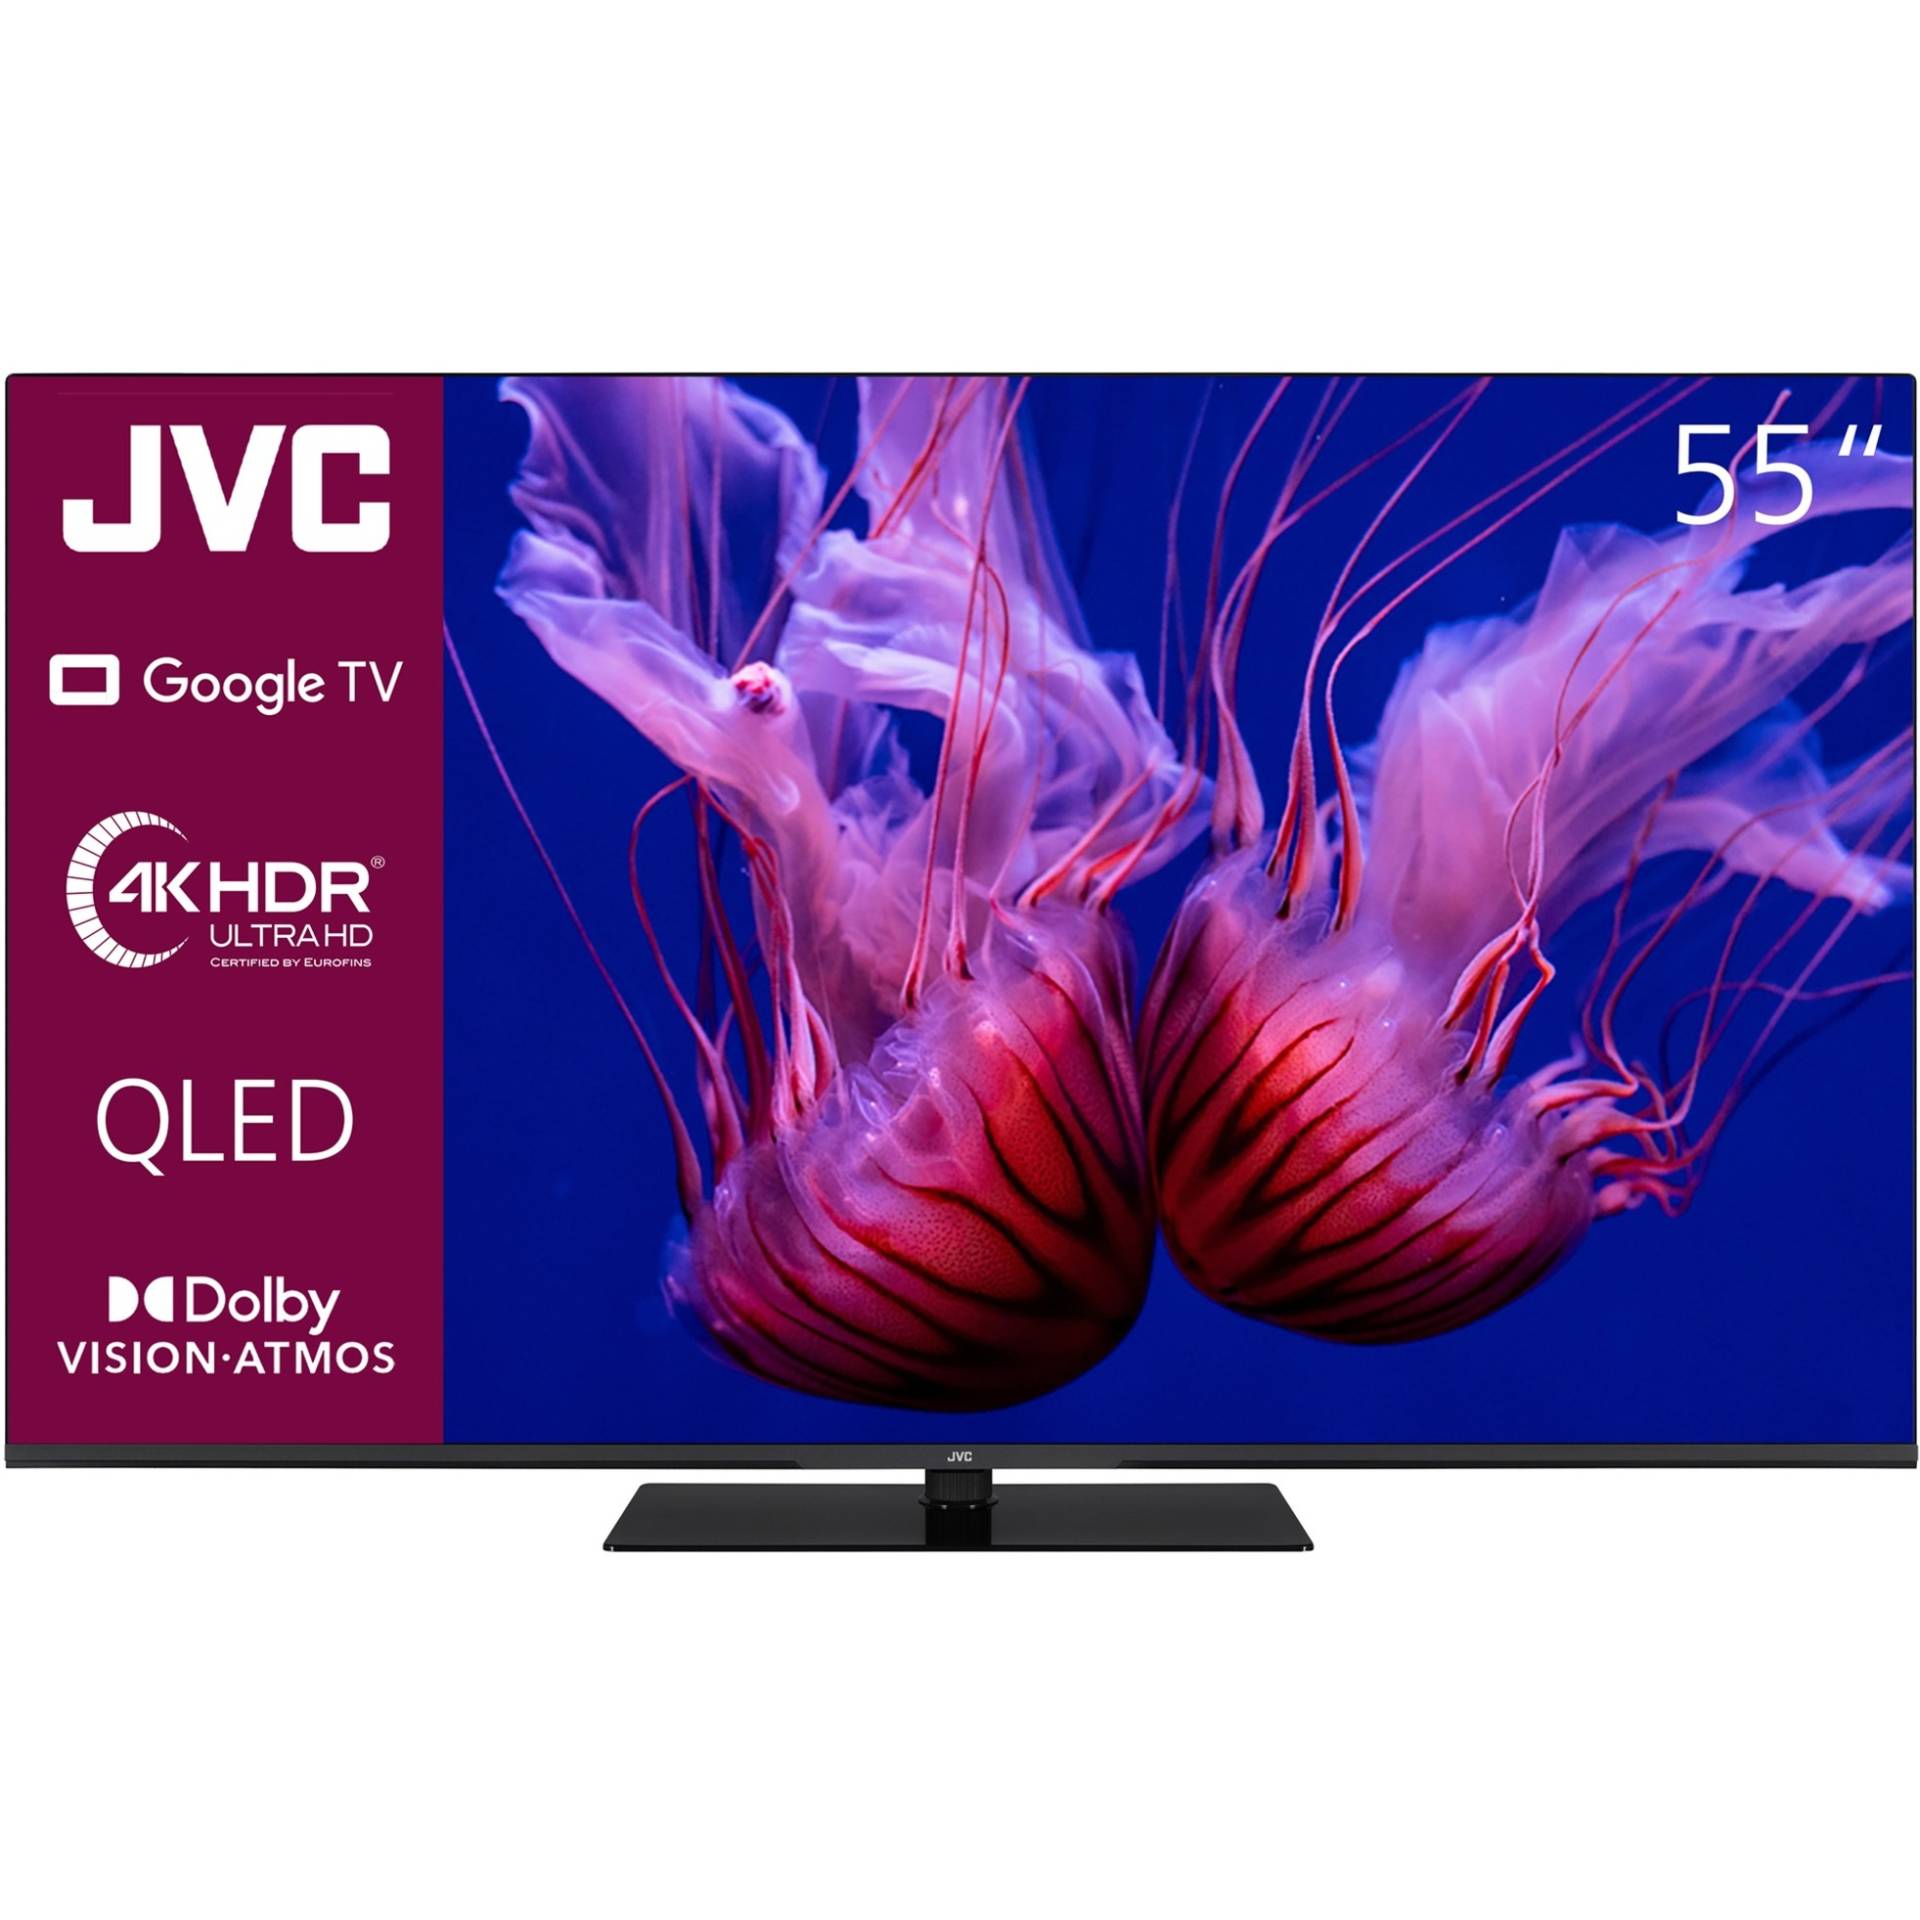 LT-55VGQ8255, QLED-Fernseher von JVC